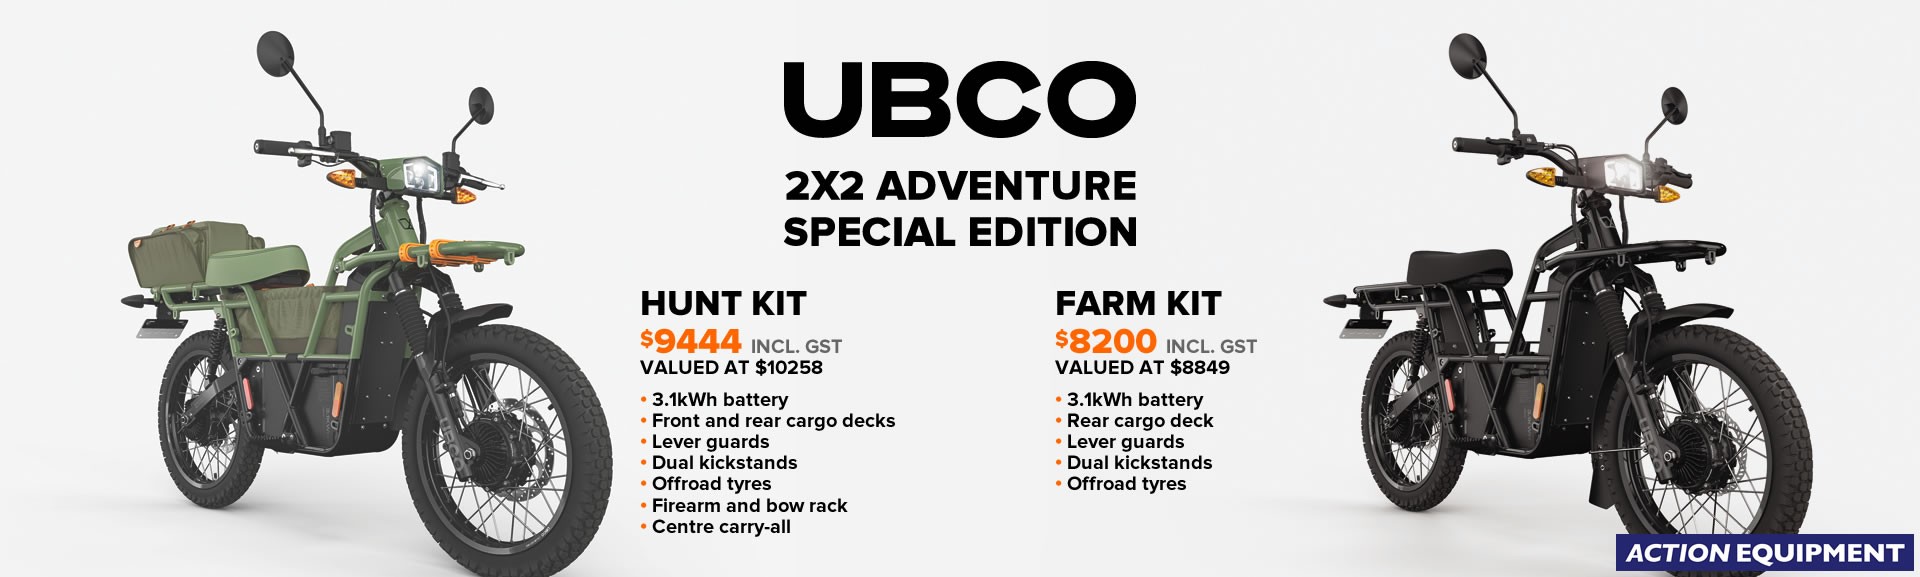 UBCO 2x2 Adventure Special Edition models